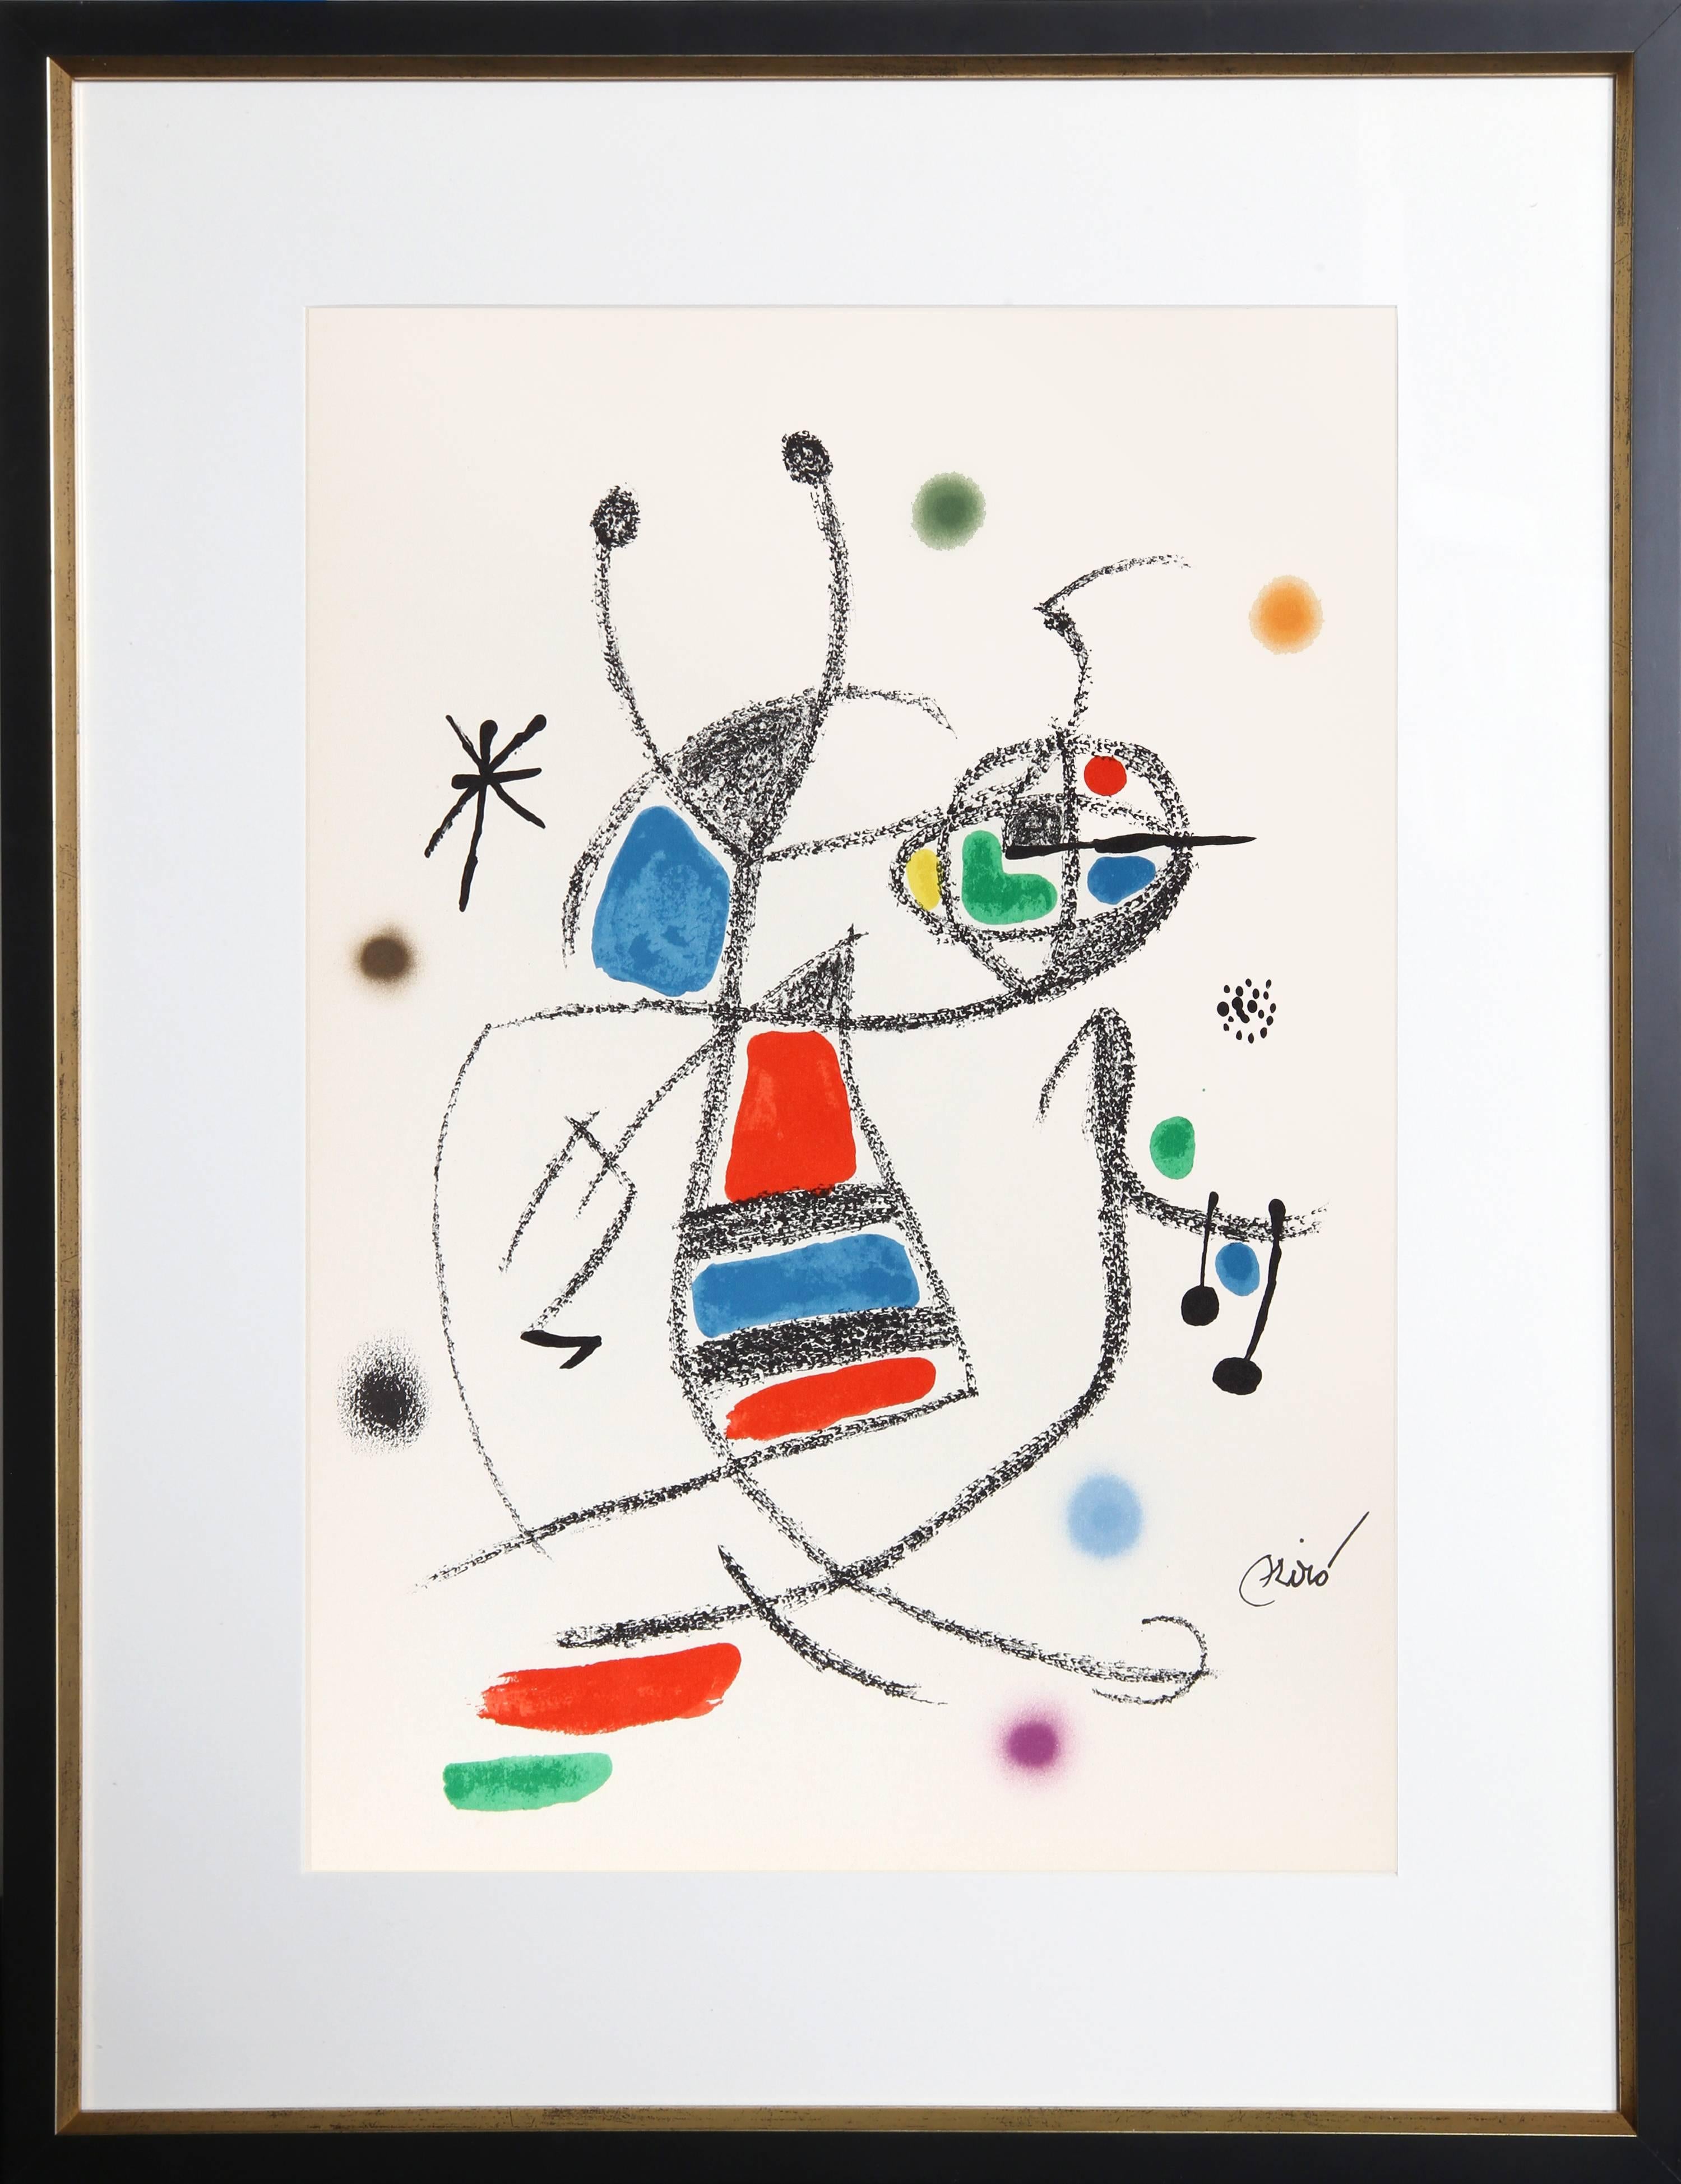 Abstract Print Joan Miró - Maravillas con Variaciones Acrosticas dans le Jardin de Miro (Number 10)